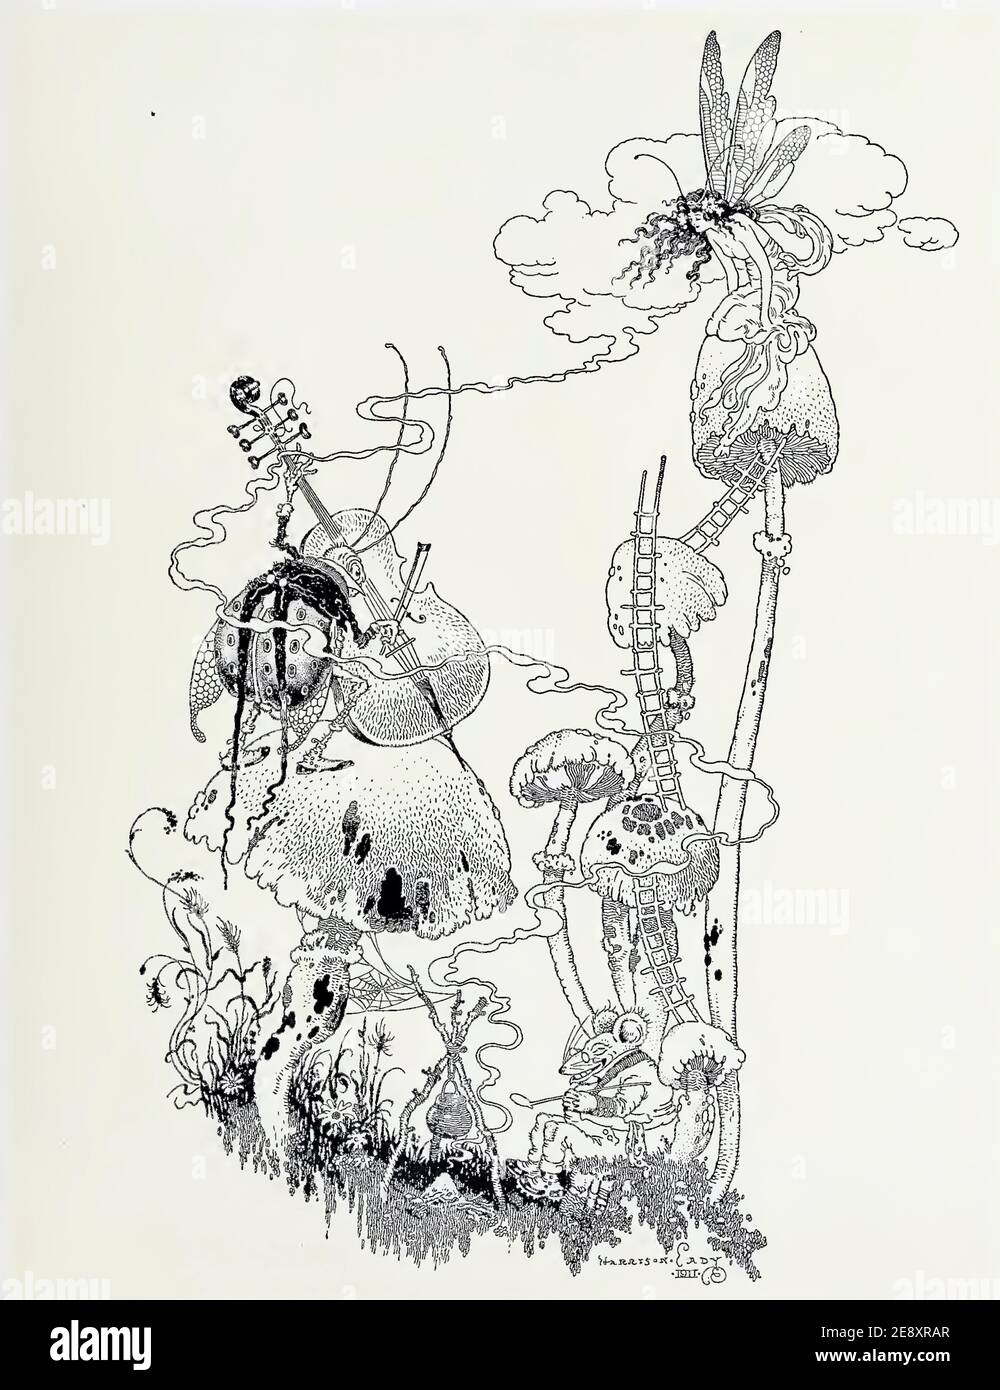 Harrison Kady obra de arte de 1911 titulado While the Kettle hierve cuenta con una mariquita tocando el violonchelo y un hada sentado en lo alto de un hongo mágico. Foto de stock